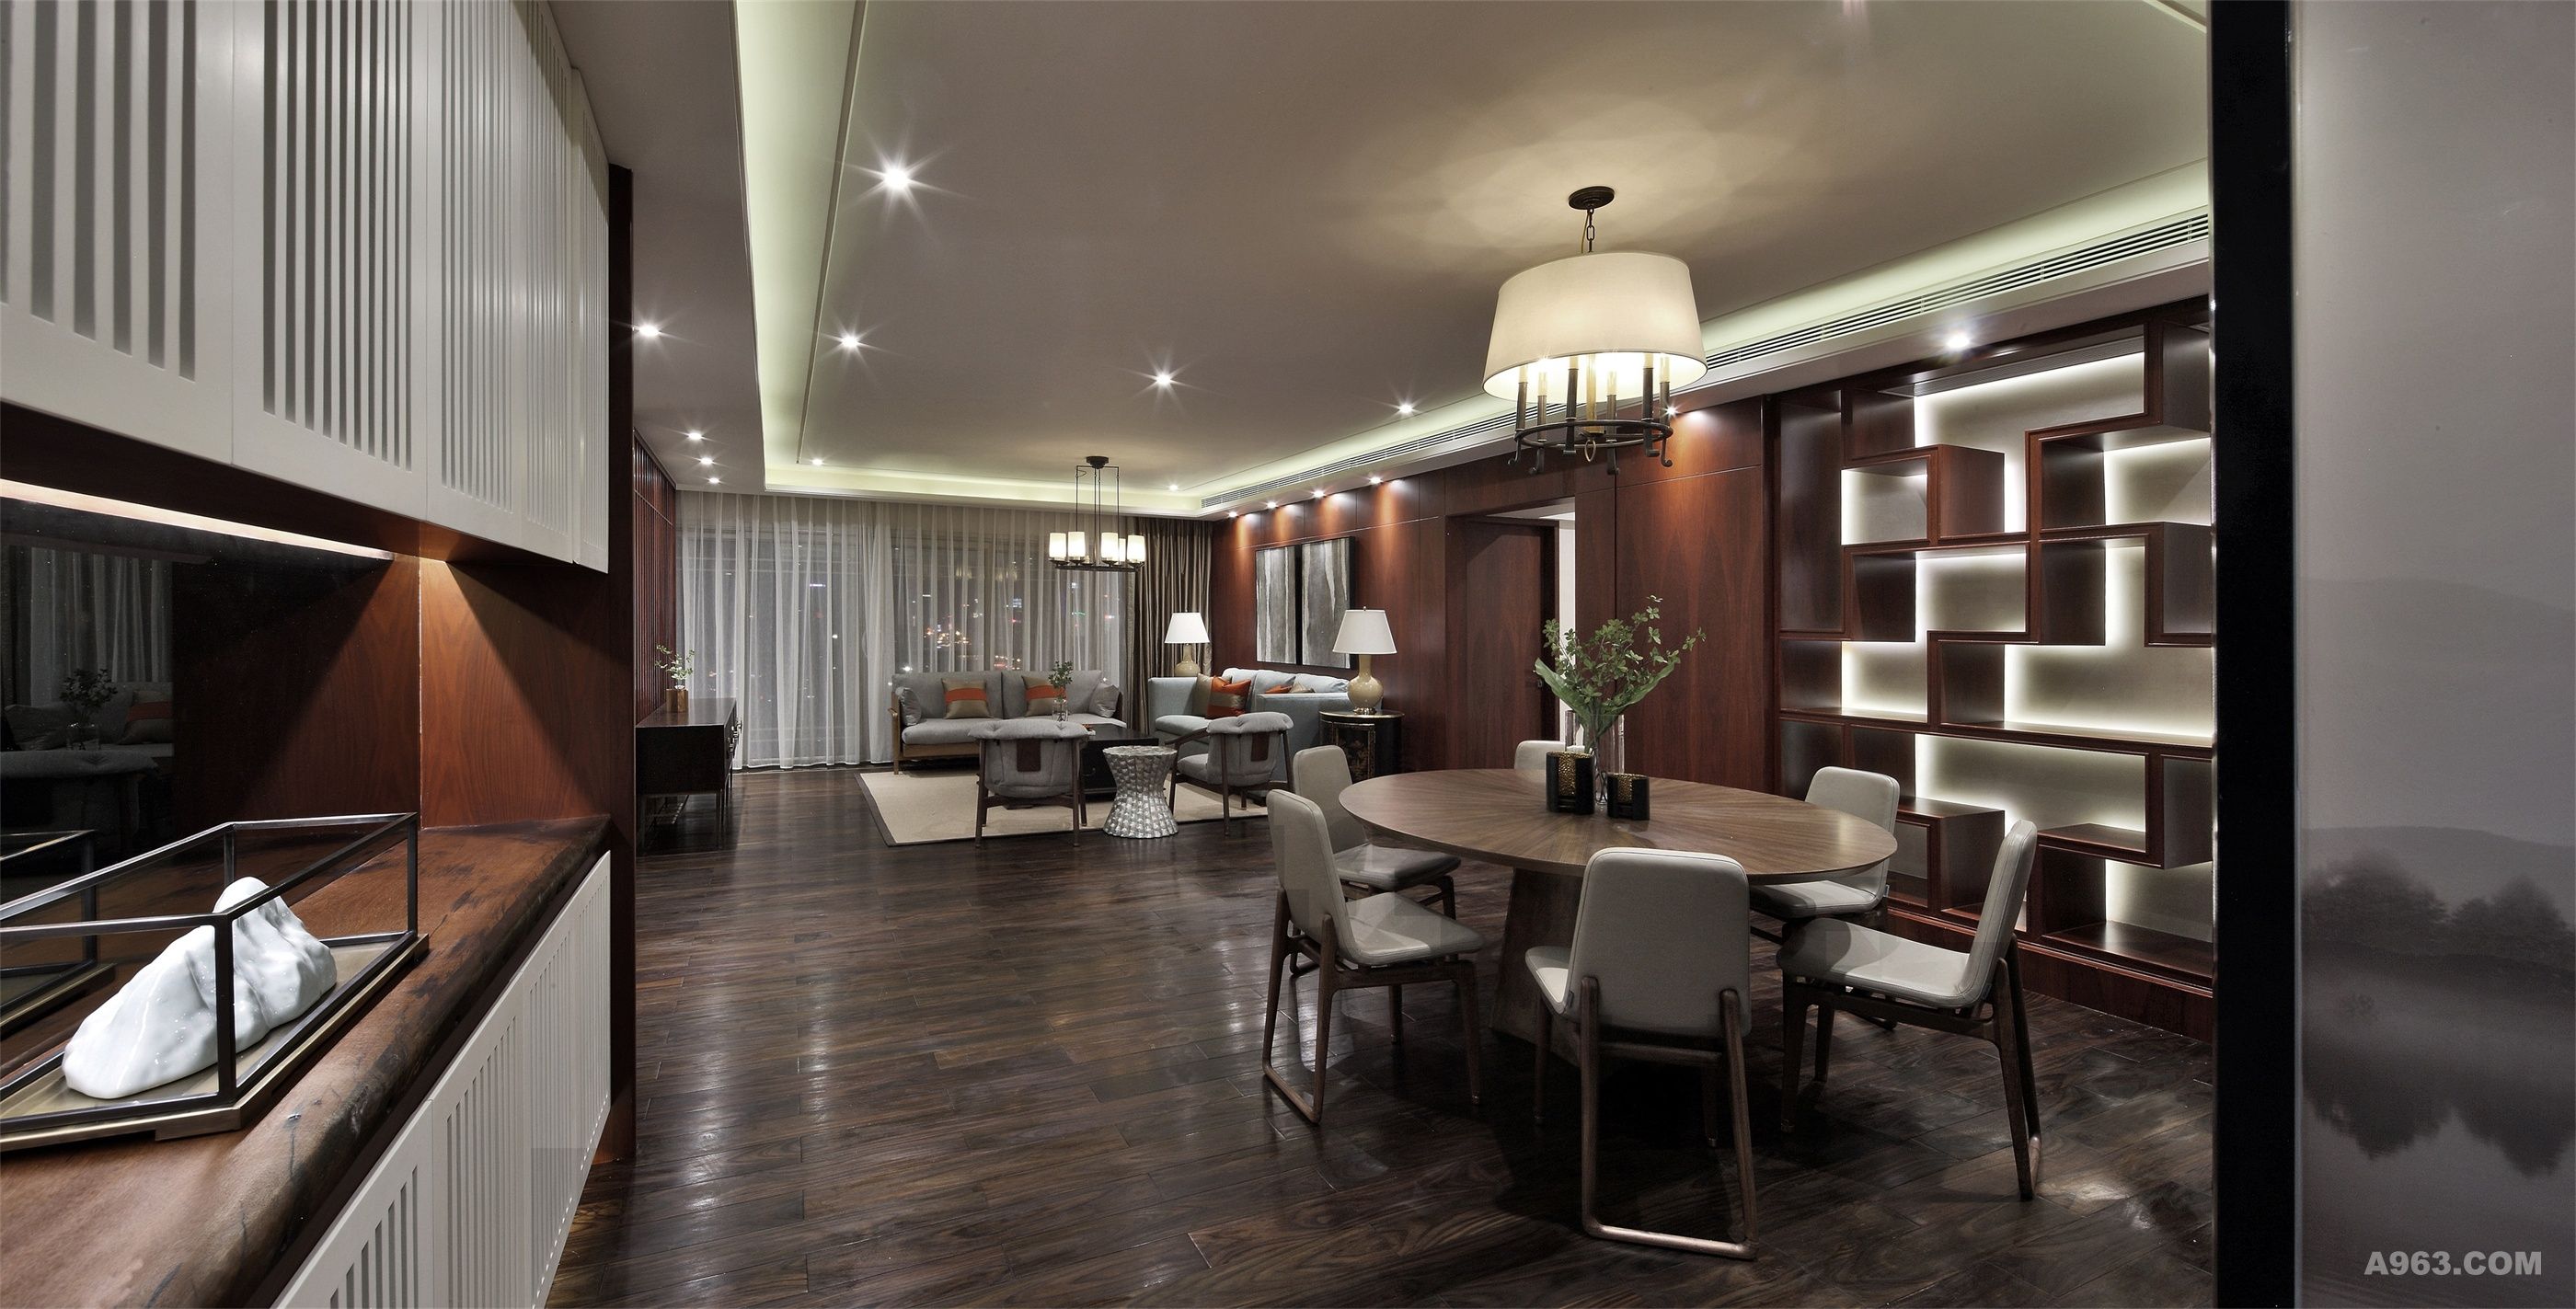 客厅、餐厅、处于一个开放式空间之下，显得宽敞通透，天花上筒灯的巧妙分隔，让功能区清晰也更富有层次。
